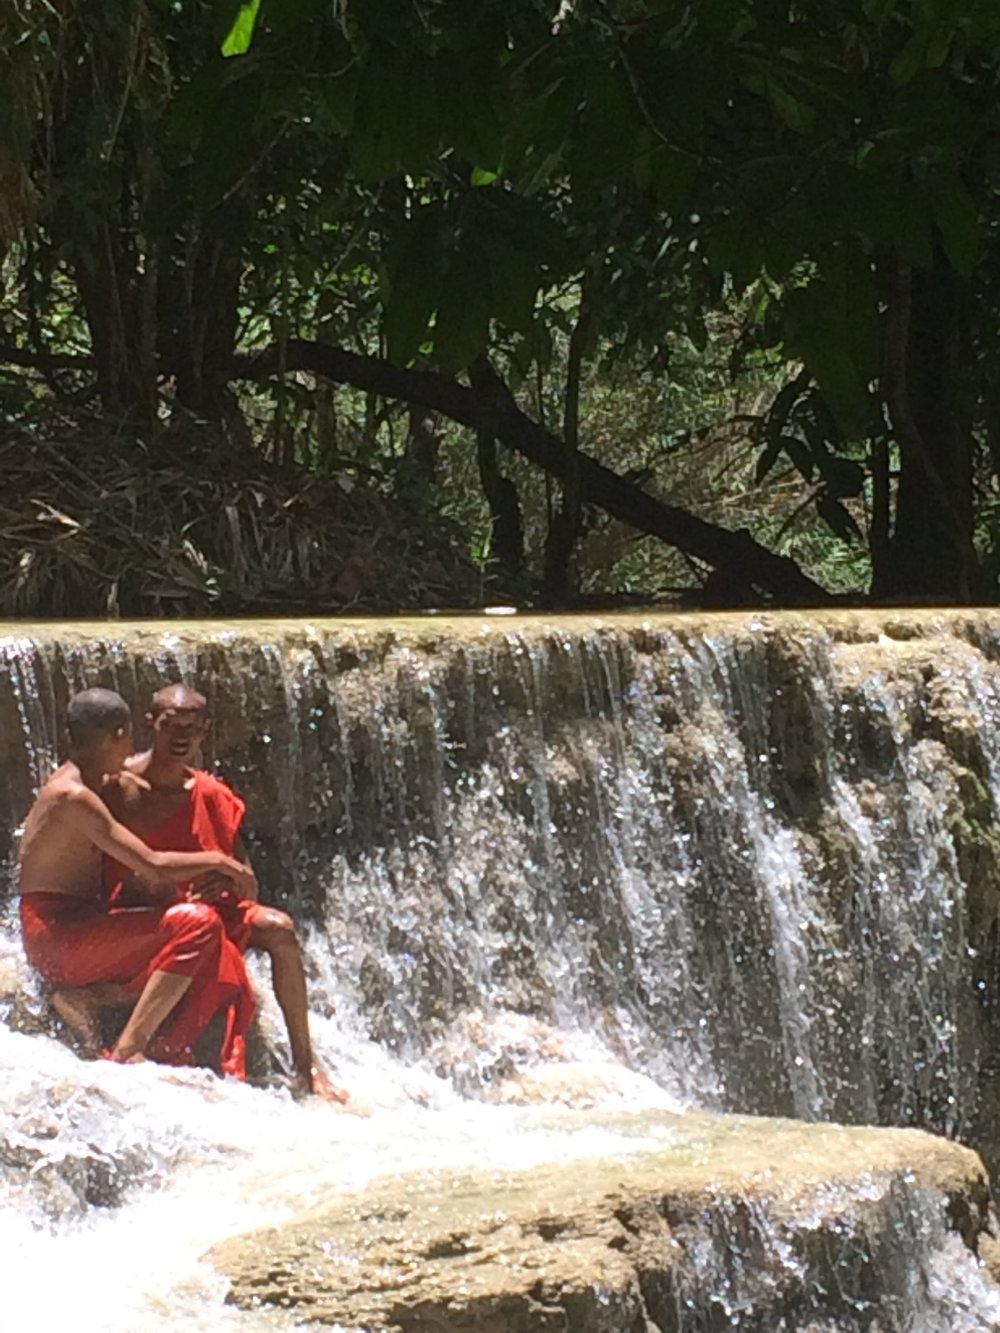 Monks at the Luang Prabang falls.